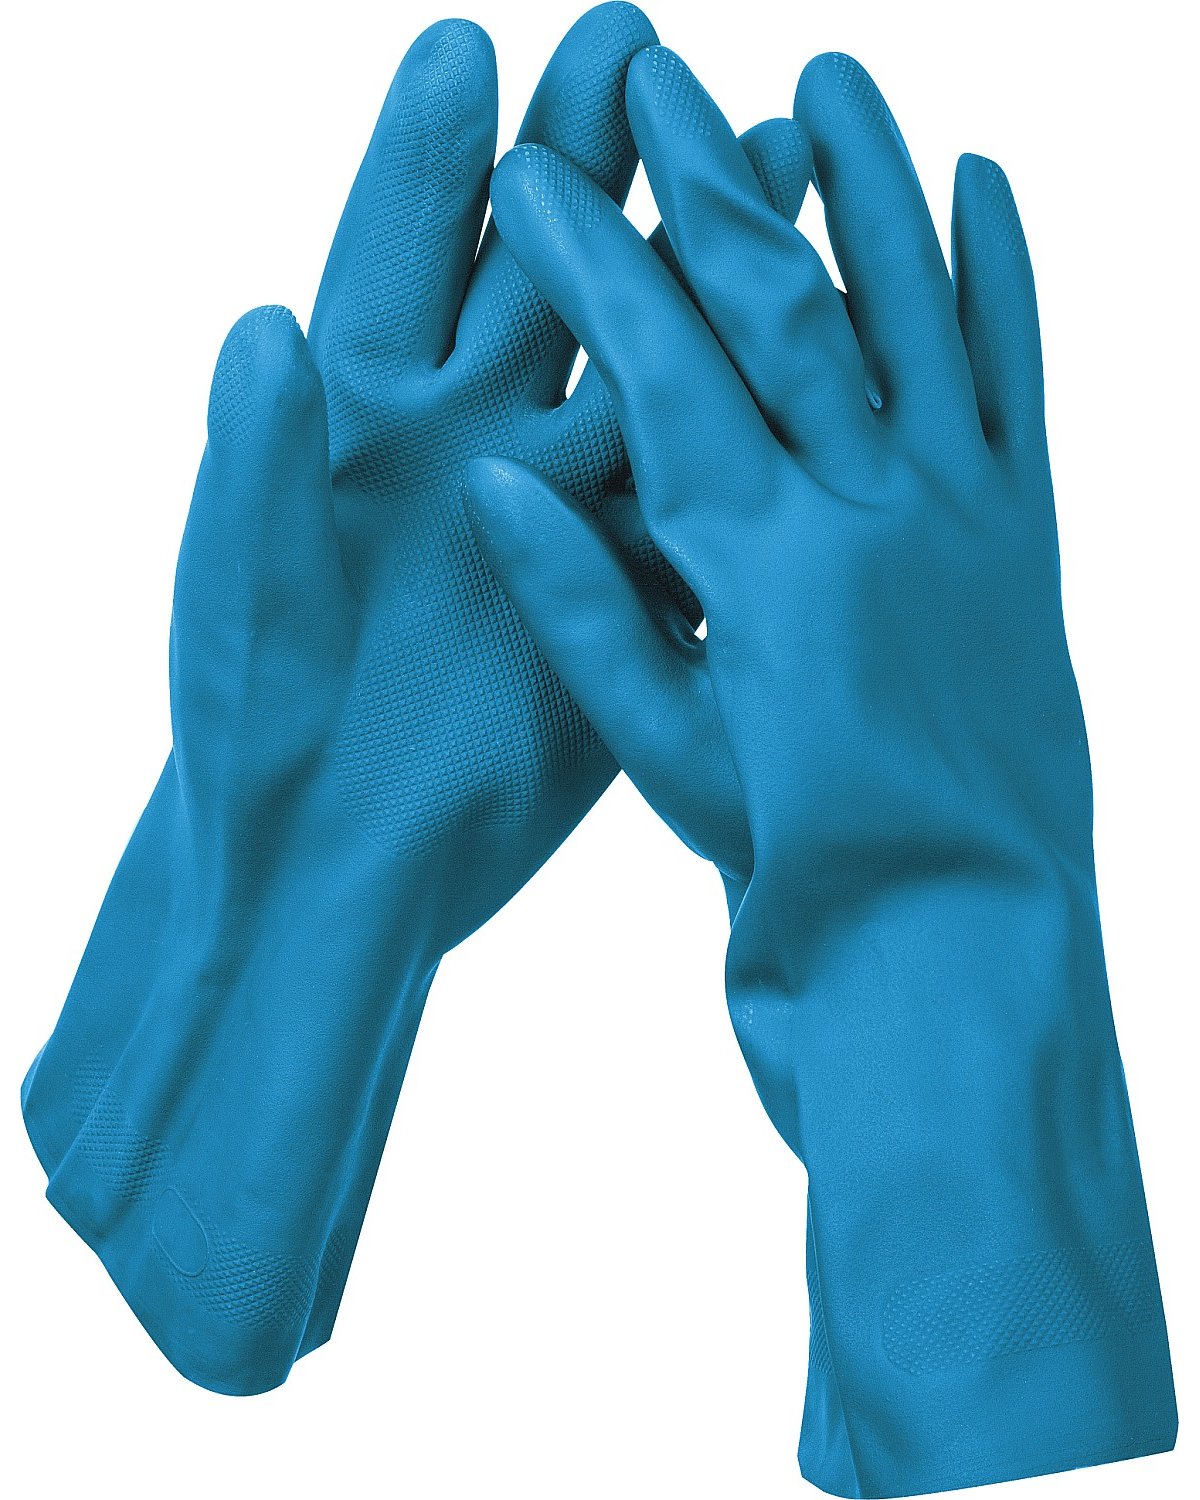 Латексные перчатки STAYER Dual Pro р. S хозяйственно-бытовые с неопреновым покрытием (11210-S_z01)Купить